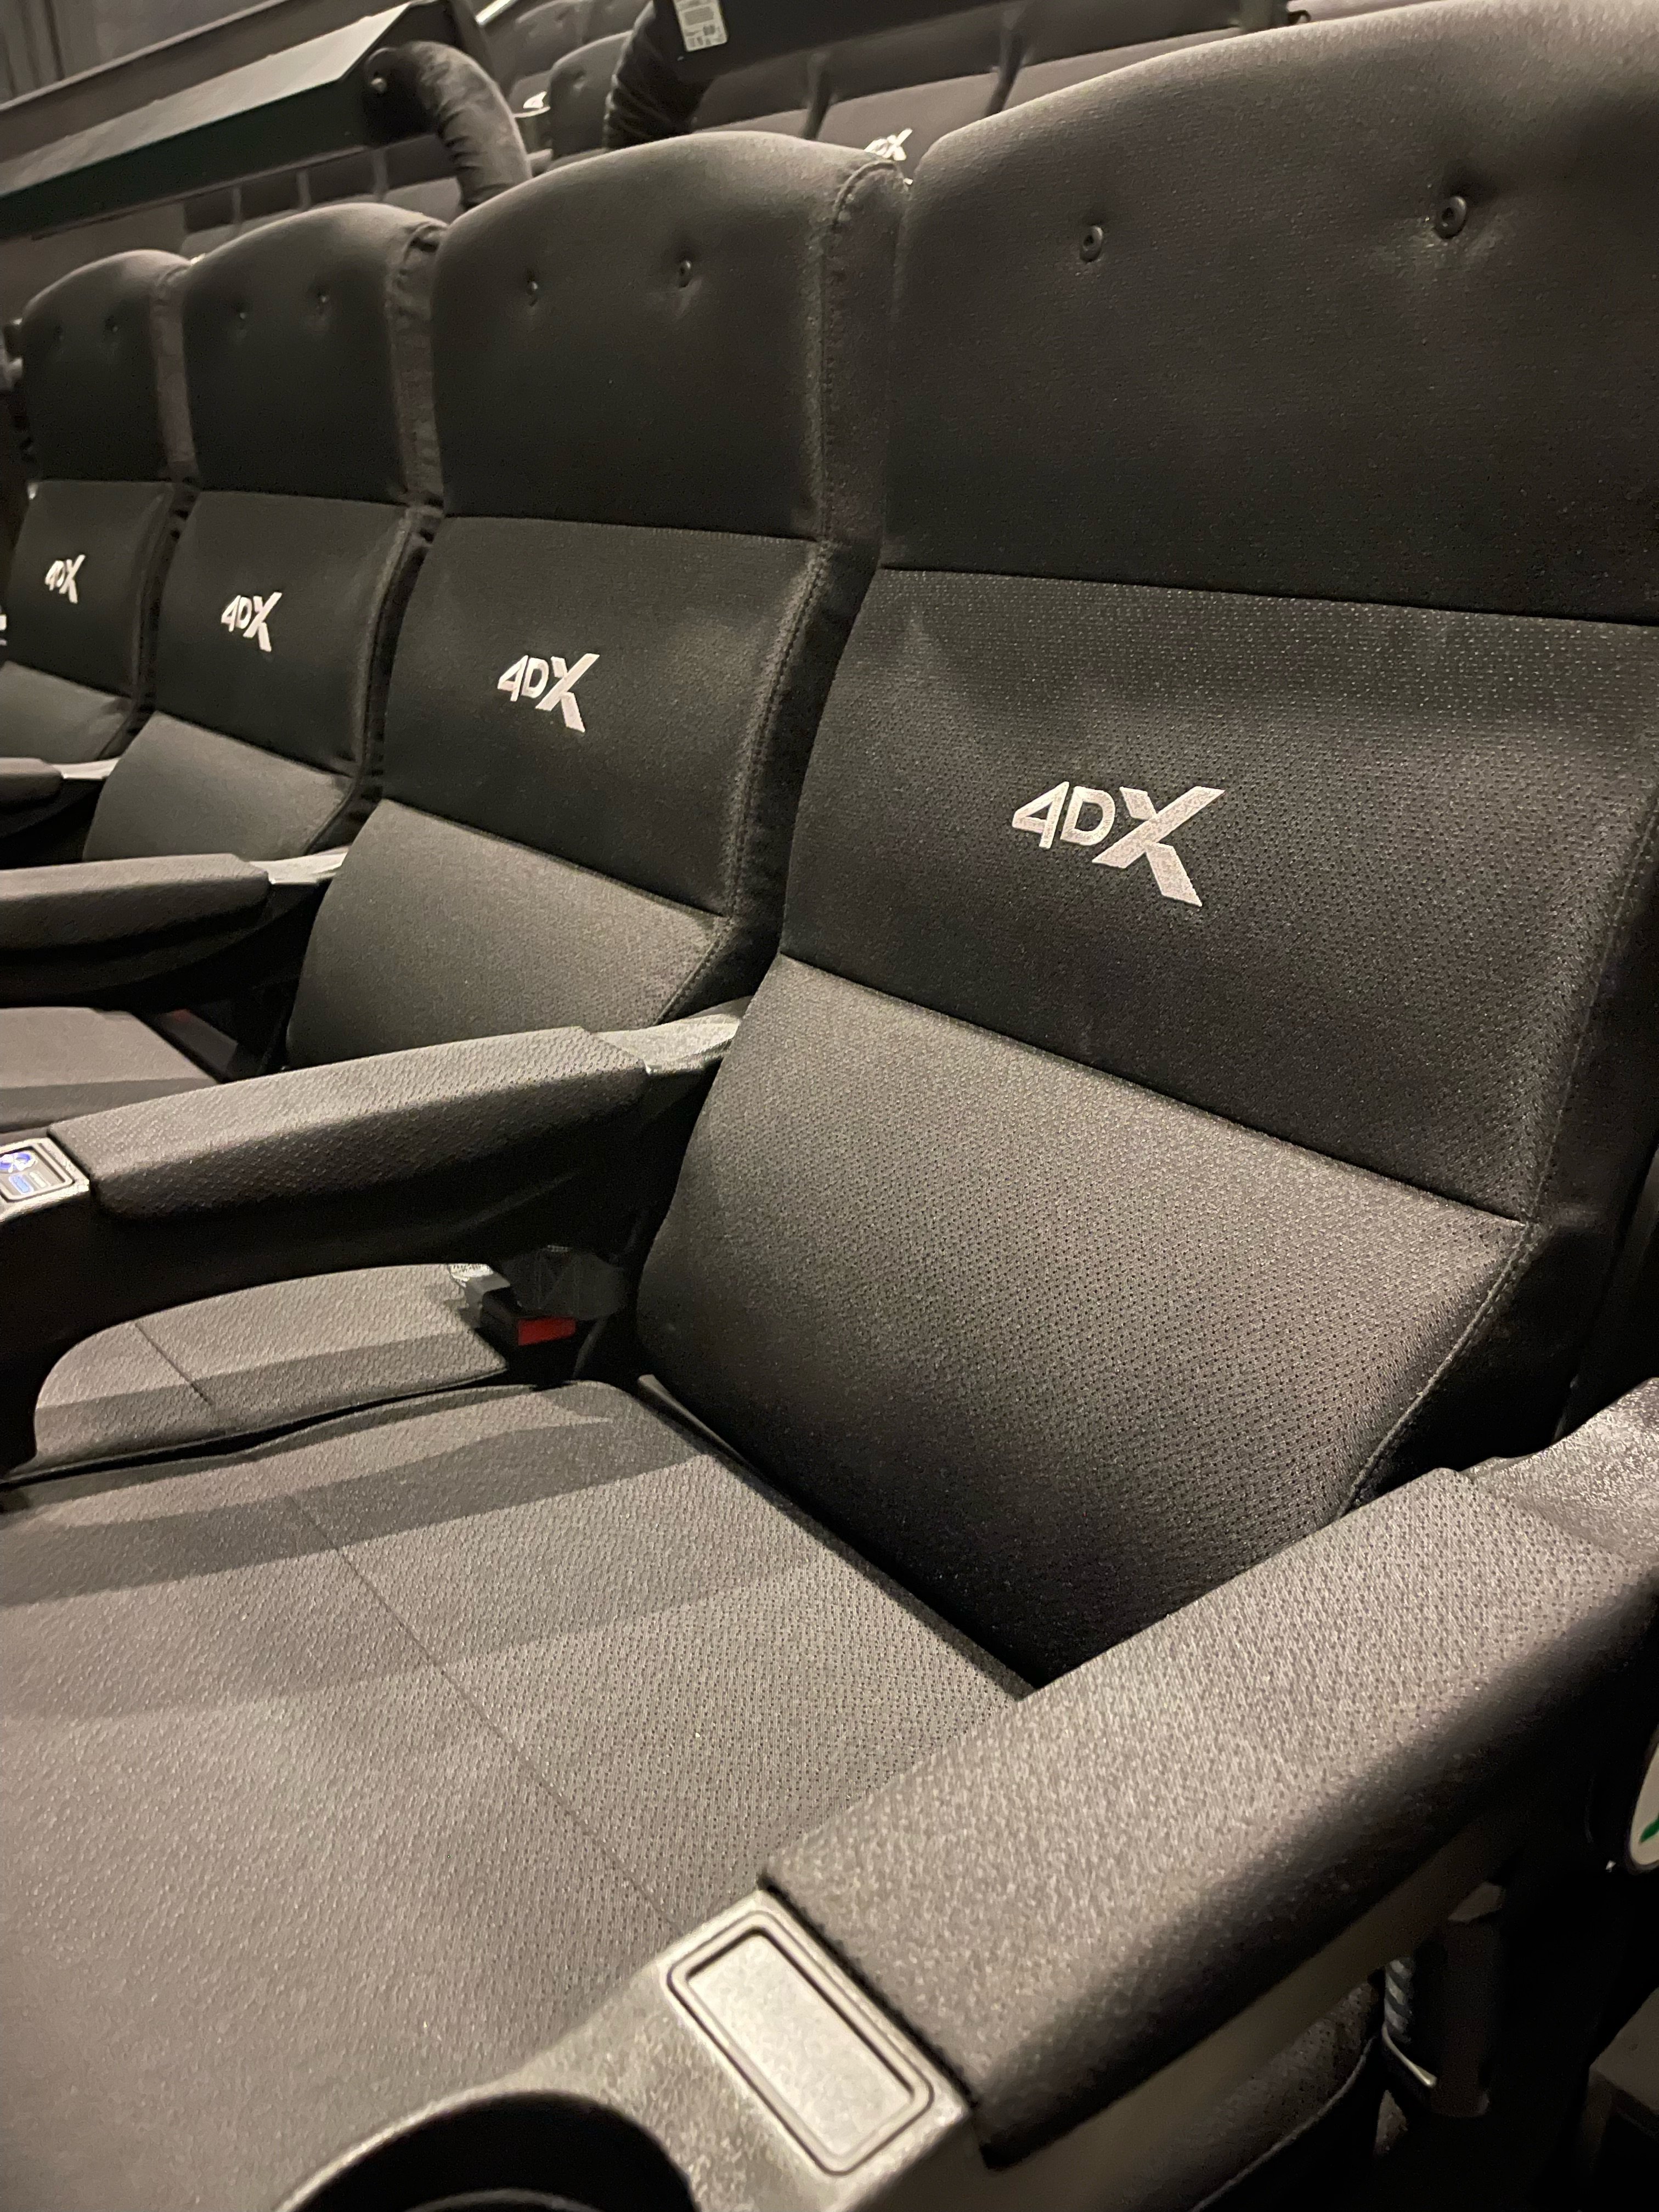 4dx seats close up